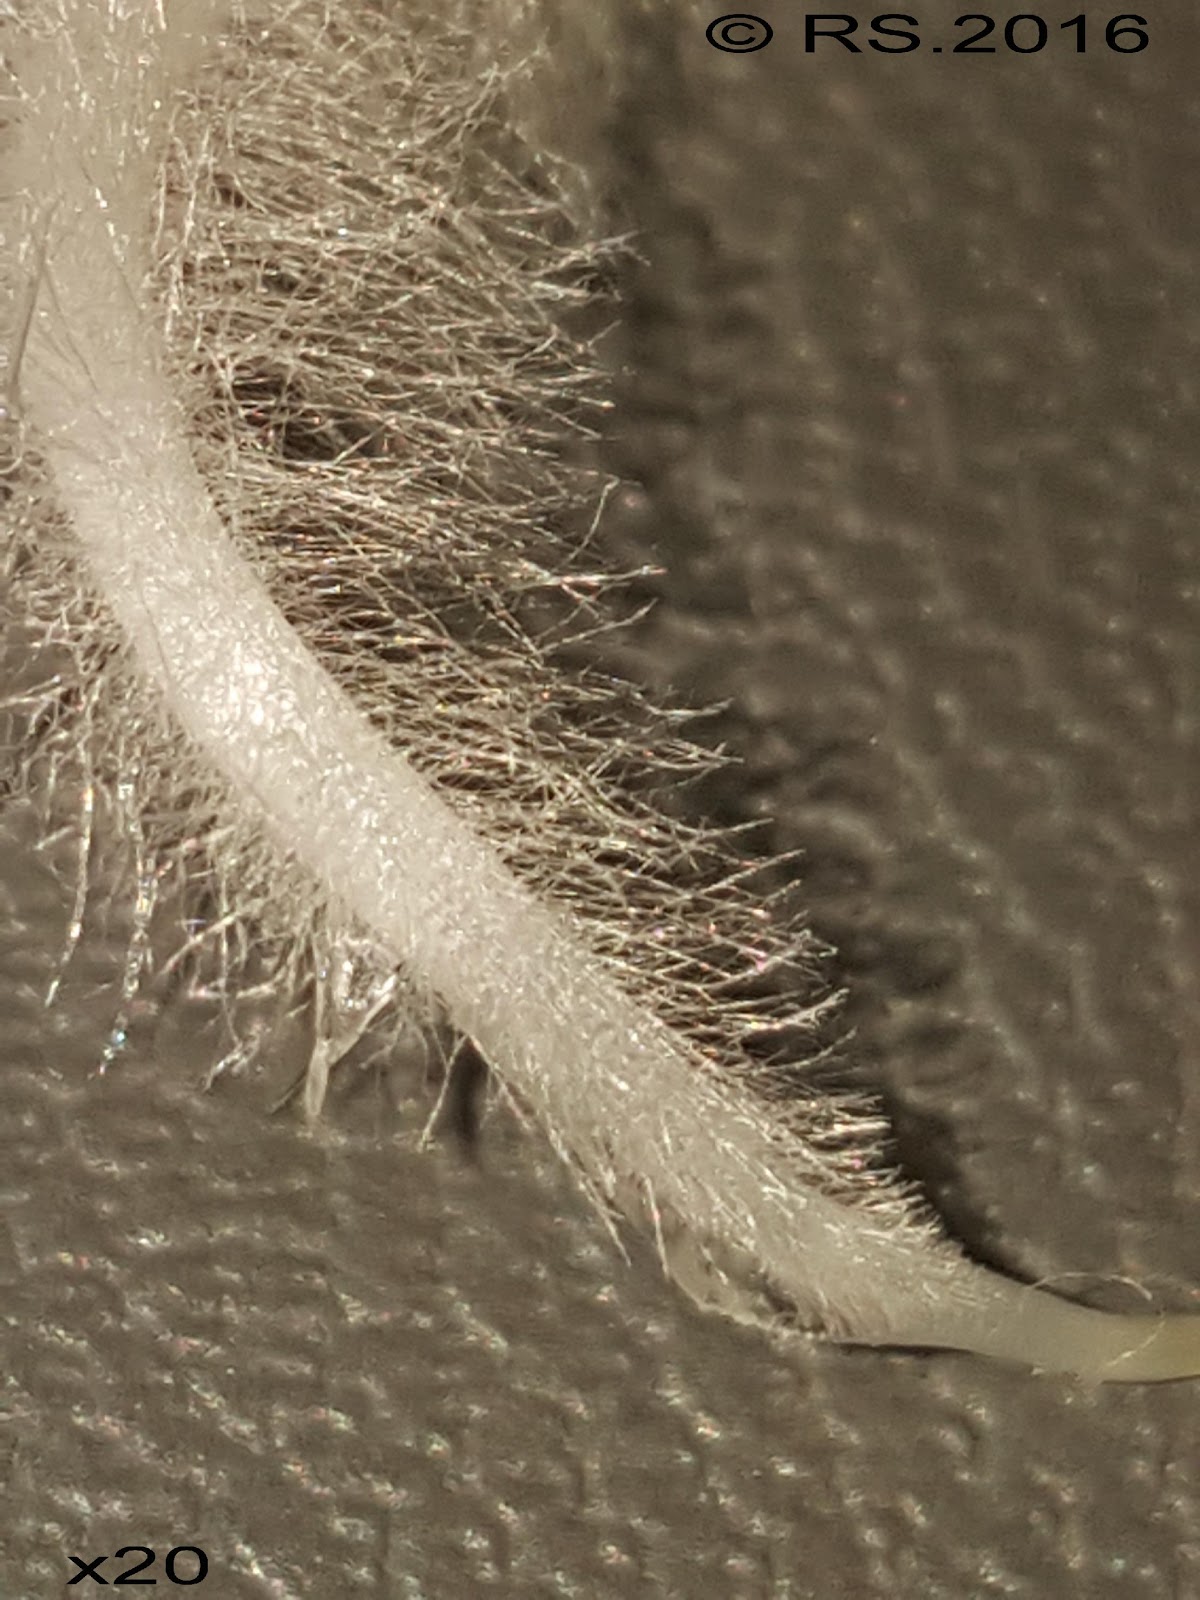 <b>Zone pilifère riche en poils absorbants à l’extrémité de la radicule de radis</b>